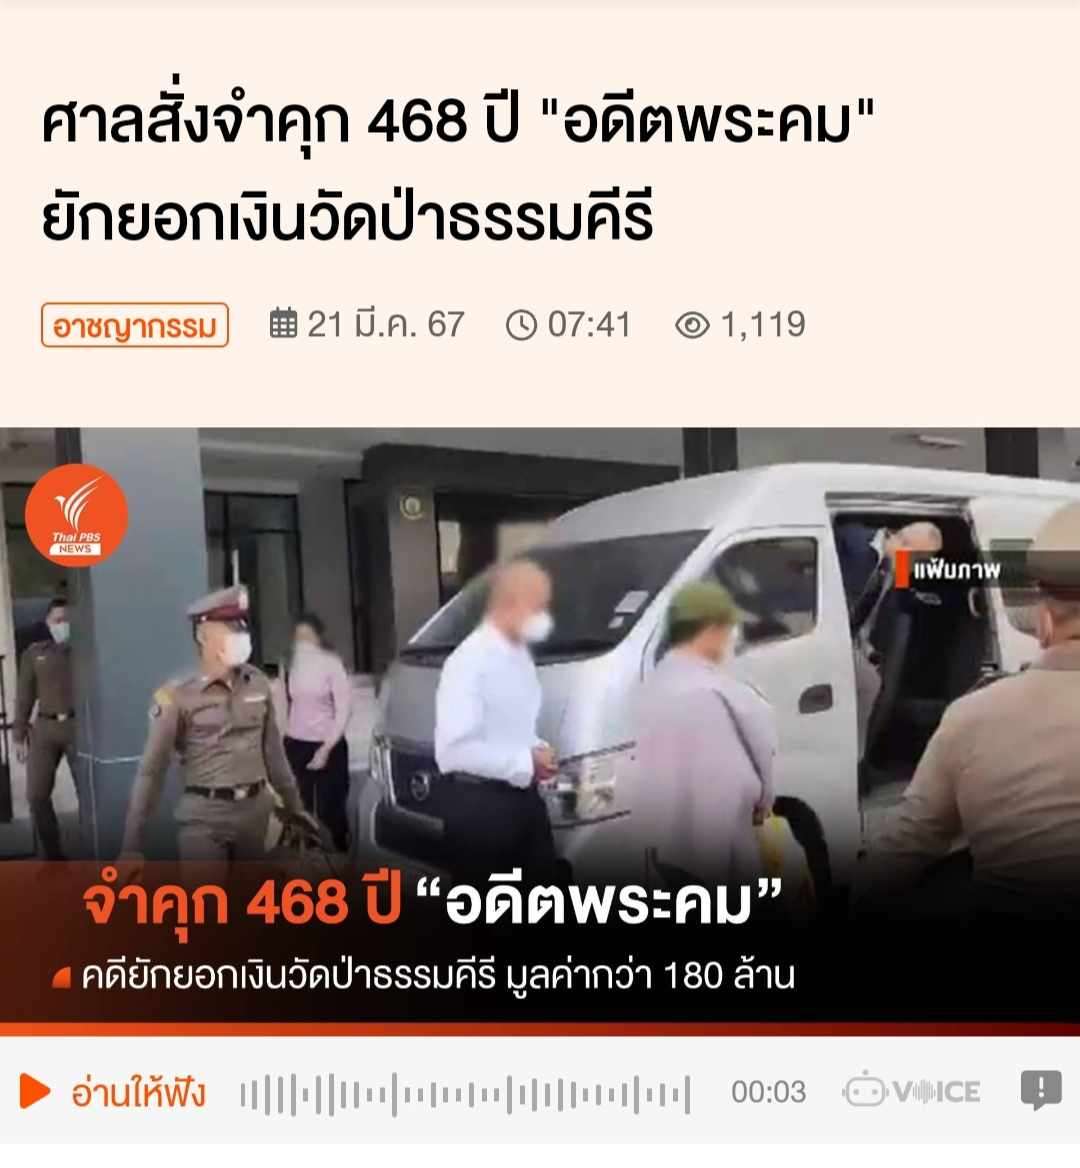 ศาลสั่งจำคุก 468 ปี &quot;อดีตพระคม&quot; ยักยอกเงินวัดป่าธรรมคีรี 21 มี.ค. 67  ข่าวจาก ไทยพีบีเอส (Thai PBS)<br /><br />ศาลอาญาคดีทุจริตและประพฤติมิชอบกลาง พิพากษาจำคุก &quot;พระอาจารย์คม&quot; อดีตเจ้าอาวาสวัดป่าธรรมคีรี รวม 468 ปี แต่โทษจำคุกสูงสุดตามกฎหมายให้เหลือ 50 ปี คดียักยอกทรัพย์วัดป่าธรรมคีรี มูลค่ากว่า 180 ล้านบาท<br />เมื่อวันที่ 20 มี.ค.2567 ศาลอาญาคดีทุจริตและประพฤติมิชอบกลาง อ่านคำพิพากษากรณี &quot;อดีตพระคม อภิวโร&quot; อดีตเจ้าอาวาสวัดป่าธรรมคีรี จ.นครราชสีมา กับพวกรวม 9 คน ในข้อหาร่วมกันกระทำความผิดยักยอกทรัพย์ของวัด รวมเป็นเงินกว่า 200 ล้านบาท โดยศาลเห็นว่ามีพยานหลักฐานมั่นคง โดยได้นำทรัพย์สินไปซุกซ่อนไว้ตามสถานที่ต่างๆ ในวัดและขนย้ายทรัพย์ออกไป<br /><br />ศาลพิพากาษาลงโทษตามประมวลกฎหมายอาญา มาตรา 91 จำคุกจำเลยที่ 1 กระทงละ 6 ปี รวม 78 กระทง คงจำคุก 468 ปี, จำคุกจำเลยที่ 2 กระทงละ 4 ปี รวม 78 กระทง คงจำคุก 312 ปี, จำคุกจำเลยที่ 3 กระทงละ 4 ปี รวม 77 กระทง คงจำคุก 308 ปี, จำเลยที่ 4, 8 คนละ 3 ปี 4 เดือน, จำคุกจำเลยที่ 5, 6, 7, 9 คนละ 3 ปี<br /><br />การเสนอแนวทางชี้ช่องพยานหลักฐานและนำสืบของจำเลยที่ 5-9 เป็นประโยชน์แก่การพิจารณา มีเหตุบรรเทาโทษ ลดโทษให้คนละหนึ่งในสาม คงจำคุกจำเลยที่ 4, 8 คนละ 2 ปี 2 เดือน 20 วัน และคงจำคุกจำเลยที่ 5, 6, 7, 9 คนละ 2 ปี<br /><br />สำหรับจำเลยที่ 1, 2 และจำเลยที่ 3 เมื่อรวมโทษทุกกระทงแล้วให้จำคุกคนละ 50 ปี ตามประมวลกฎหมายอาญา มาตรา 91(3) ข้อหาอื่นสำหรับจำเลยที่ 4-9 ให้ยกฟ้อง<br /><br /><br />คดีนี้เกิดขึ้นเมื่อวันที่ 6 พ.ค.2566 กองบัญชาการตำรวจสอบสวนกลางดำเนินคดีกับ นายคม หรือ อดีตพระอาจารย์คม ผู้ต้องหาในข้อหา &quot;เป็นผู้สนับสนุนเจ้าพนักงาน มีหน้าที่ซื้อ ทำ จัดการหรือรักษาทรัพย์ใด เบียดบังทรัพย์นั้น เป็นของตนหรือเป็นของผู้อื่นโดยทุจริต, เป็นเจ้าพนักงาน ปฏิบัติหรือละเว้นการปฏิบัติหน้าที่โดยมิชอบ&quot;<br /><br />นายวุฒิมาฯ หรือ พระหมอ ข้อหา &quot;เป็นเจ้าพนักงาน มีหน้าที่ซื้อ ทำ จัดการหรือรักษาทรัพย์ใด เบียดบังทรัพย์นั้นเป็นของตนหรือเป็นของผู้อื่นโดยทุจริต, เป็นเจ้าพนักงาน ปฏิบัติหรือละเว้นการปฏิบัติหน้าที่โดยมิชอบ&quot;<br /><br />และ น.ส.จุฑาทิพย์ฯ ผู้ต้องหา ข้อหา &quot;เป็นผู้สนับสนุนเจ้าพนักงาน มีหน้าที่ซื้อ ทำ จัดการหรือรักษาทรัพย์ใด เบียดบังทรัพย์นั้นเป็นของตนหรือเป็นของผู้อื่นโดยทุจริต,เป็นเจ้าพนักงาน ปฏิบัติหรือละเว้นการปฏิบัติหน้าที่โดยมิชอบ และรับของโจร&quot; เป็นเหตุให้วัดป่าธรรมคีรี ได้รับความเสียหายรวมเป็นเงิน 182,776,733 บาท<br /><br />ไทยพีบีเอส (Thai PBS) เลขที่ 145 ถนนวิภาวดีรังสิต แขวงตลาดบางเขน เขตหลักสี่ กรุงเทพฯ 10210 โทร.0-2790-2000